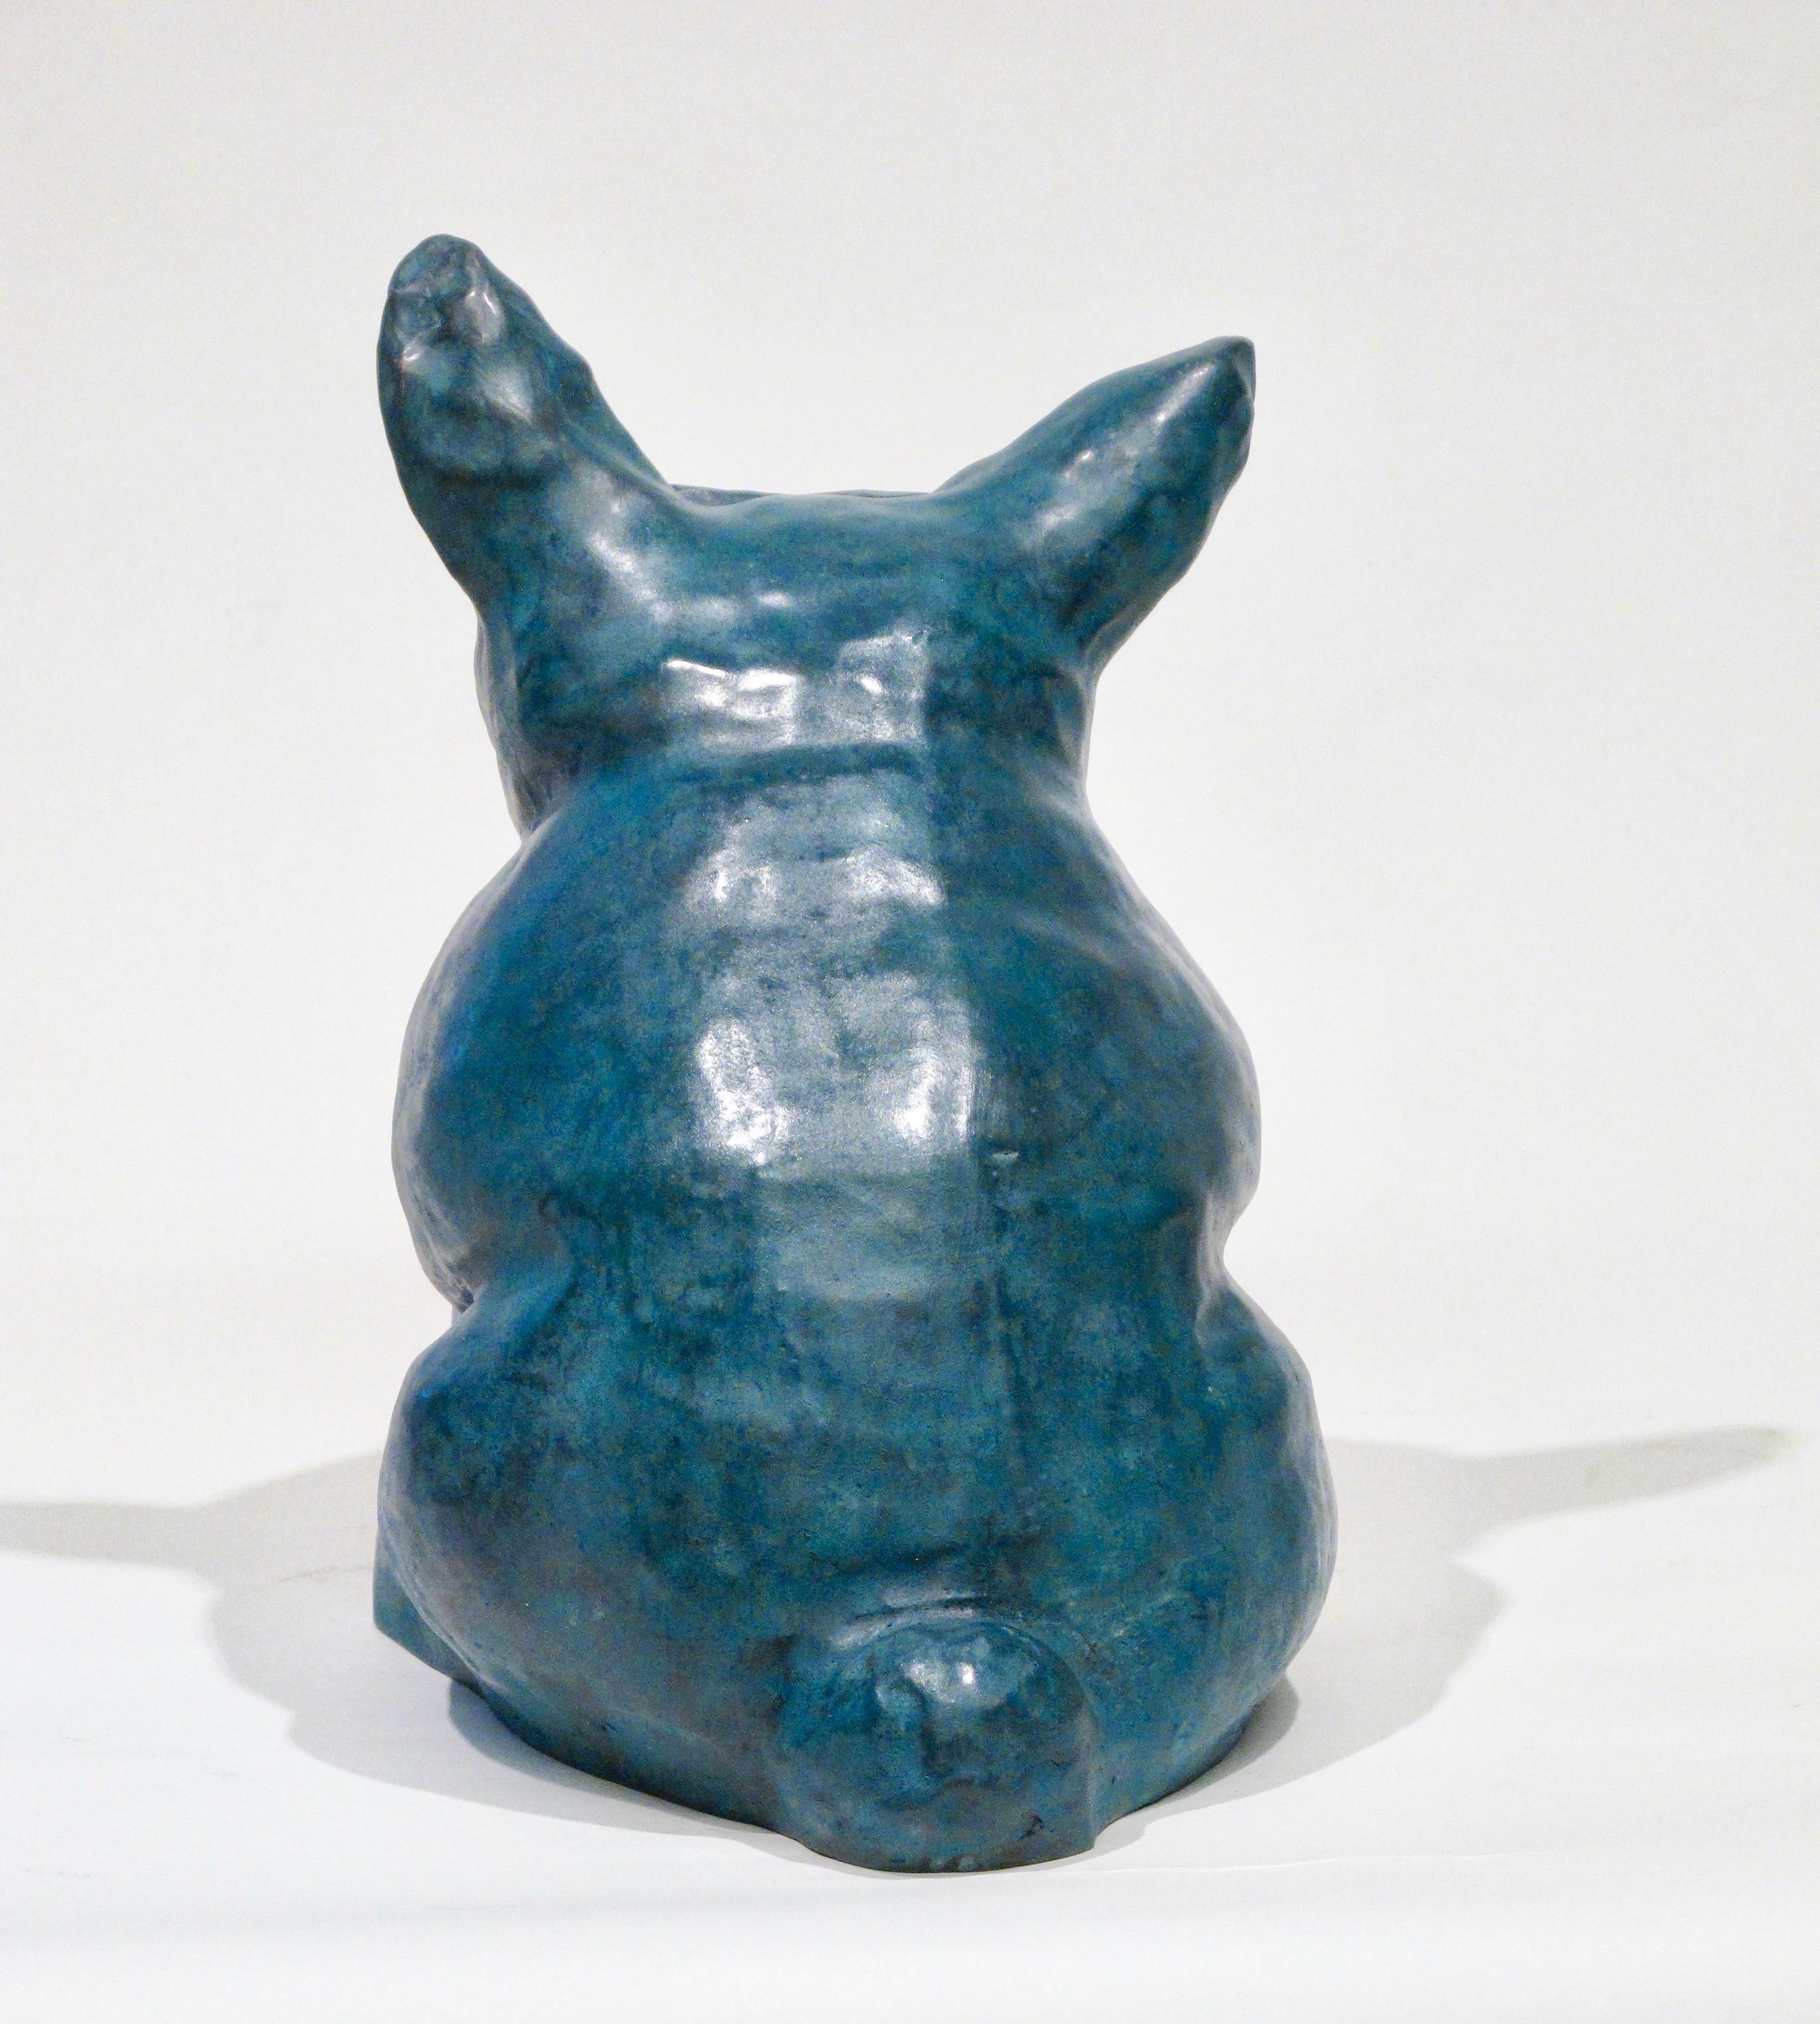 Marvin Tso Likes Green Chile Käseburger, Bronzeskulptur eines Hundes, Teal, sitzend (Zeitgenössisch), Sculpture, von Melanie Yazzie